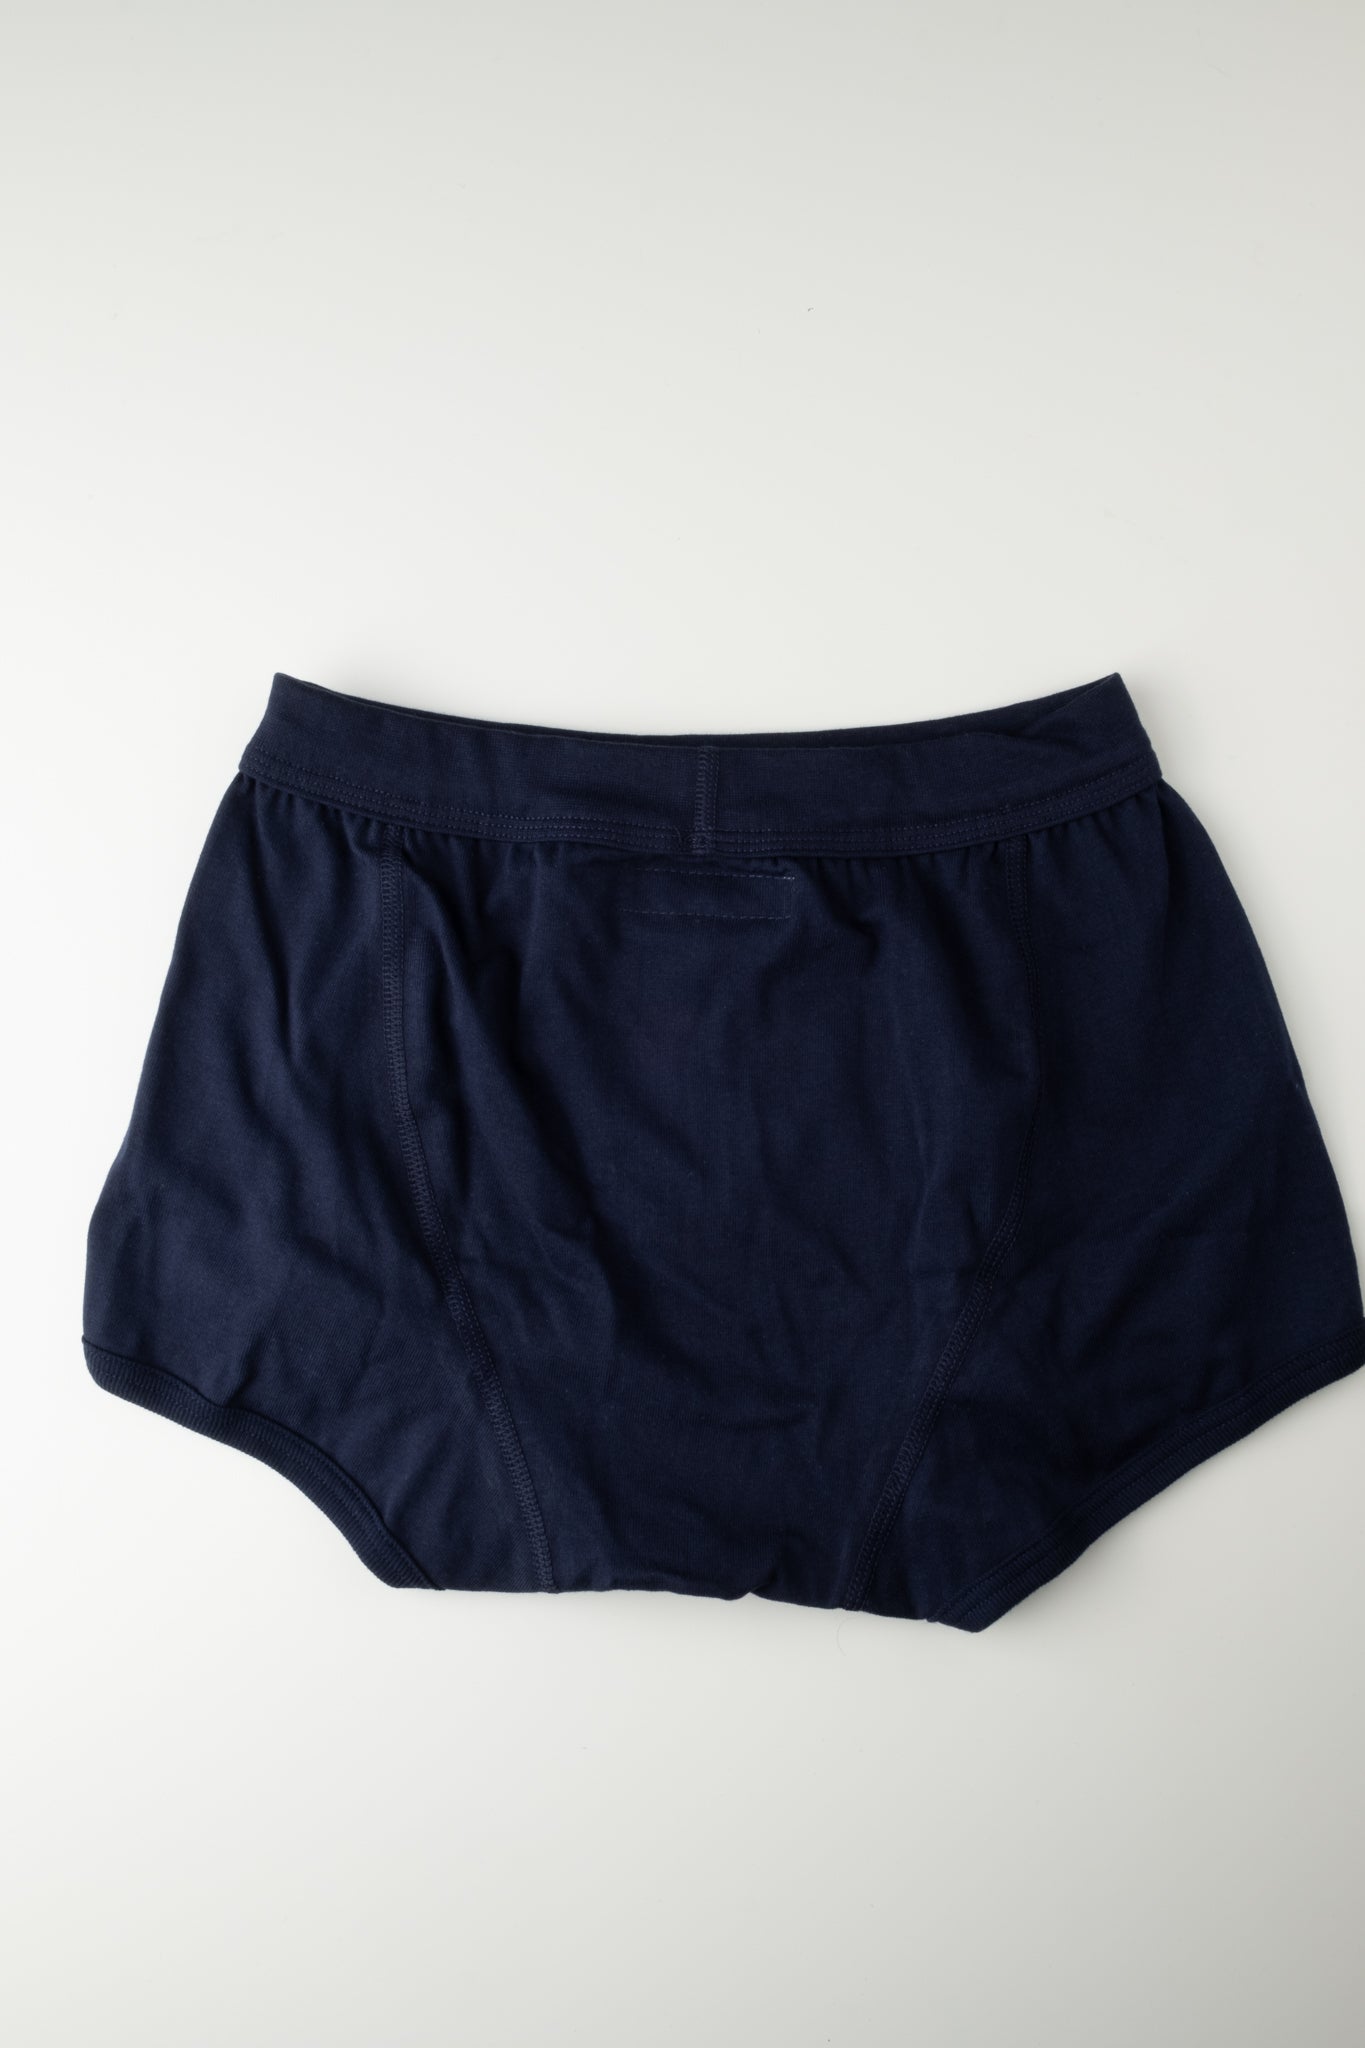 Good Originals Boxer Shorts - Ink Blue